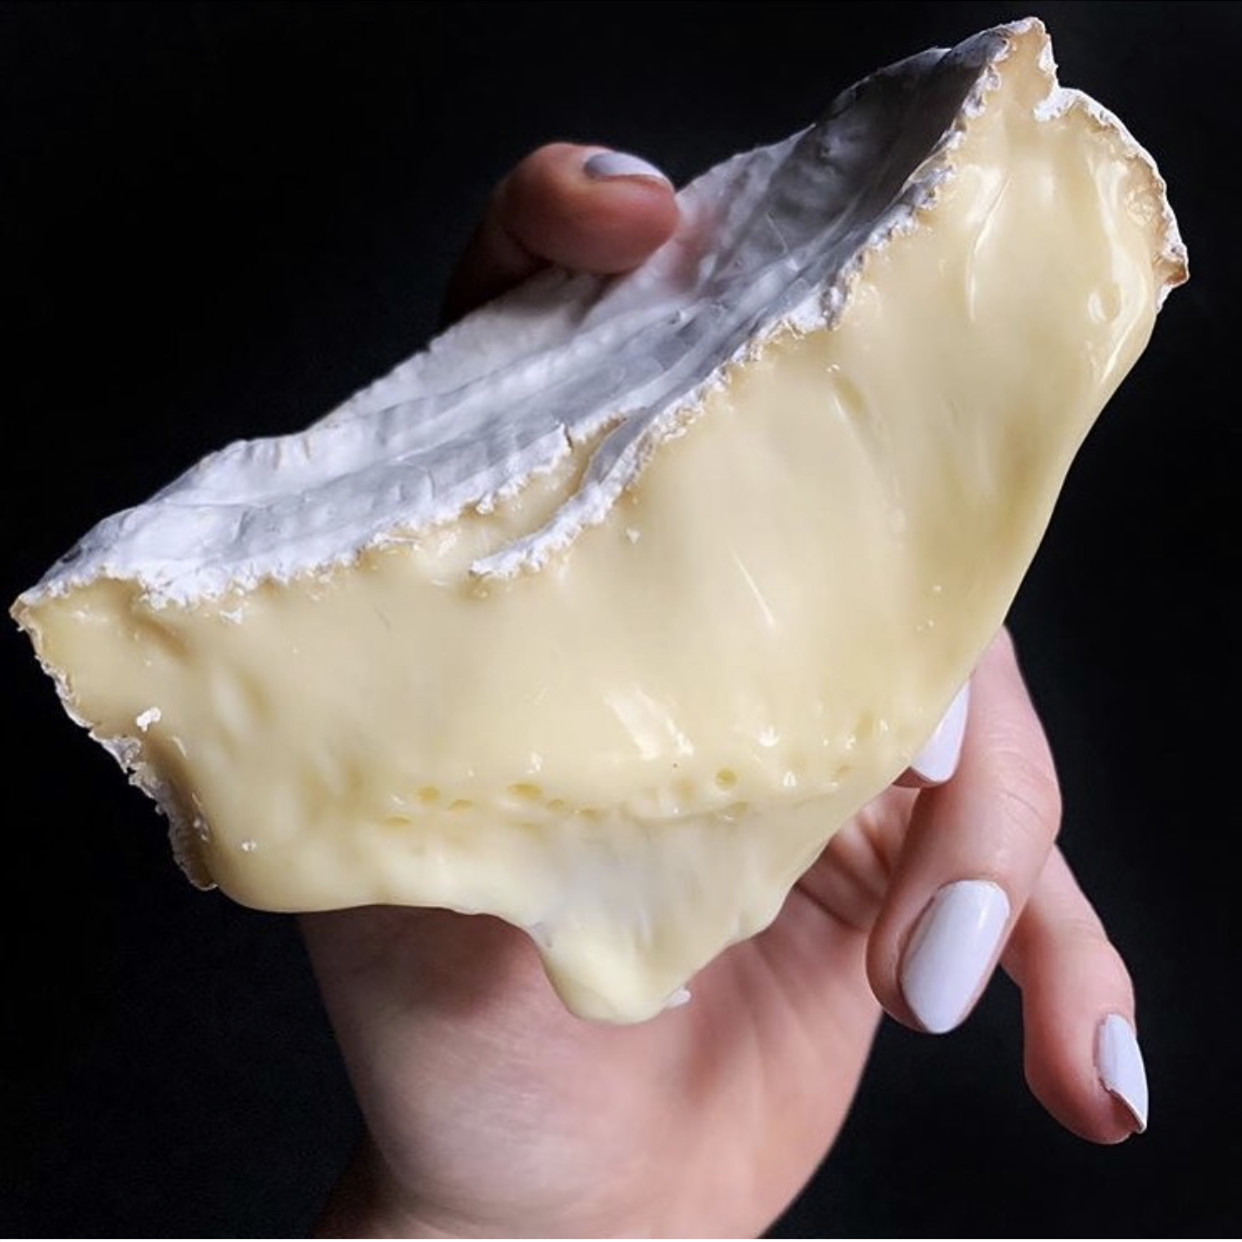 法国进口Isigny伊斯尼布里奶酪软质新鲜干酪Brie诺曼底奶源乳酪 咖啡/麦片/冲饮 原制奶酪 原图主图